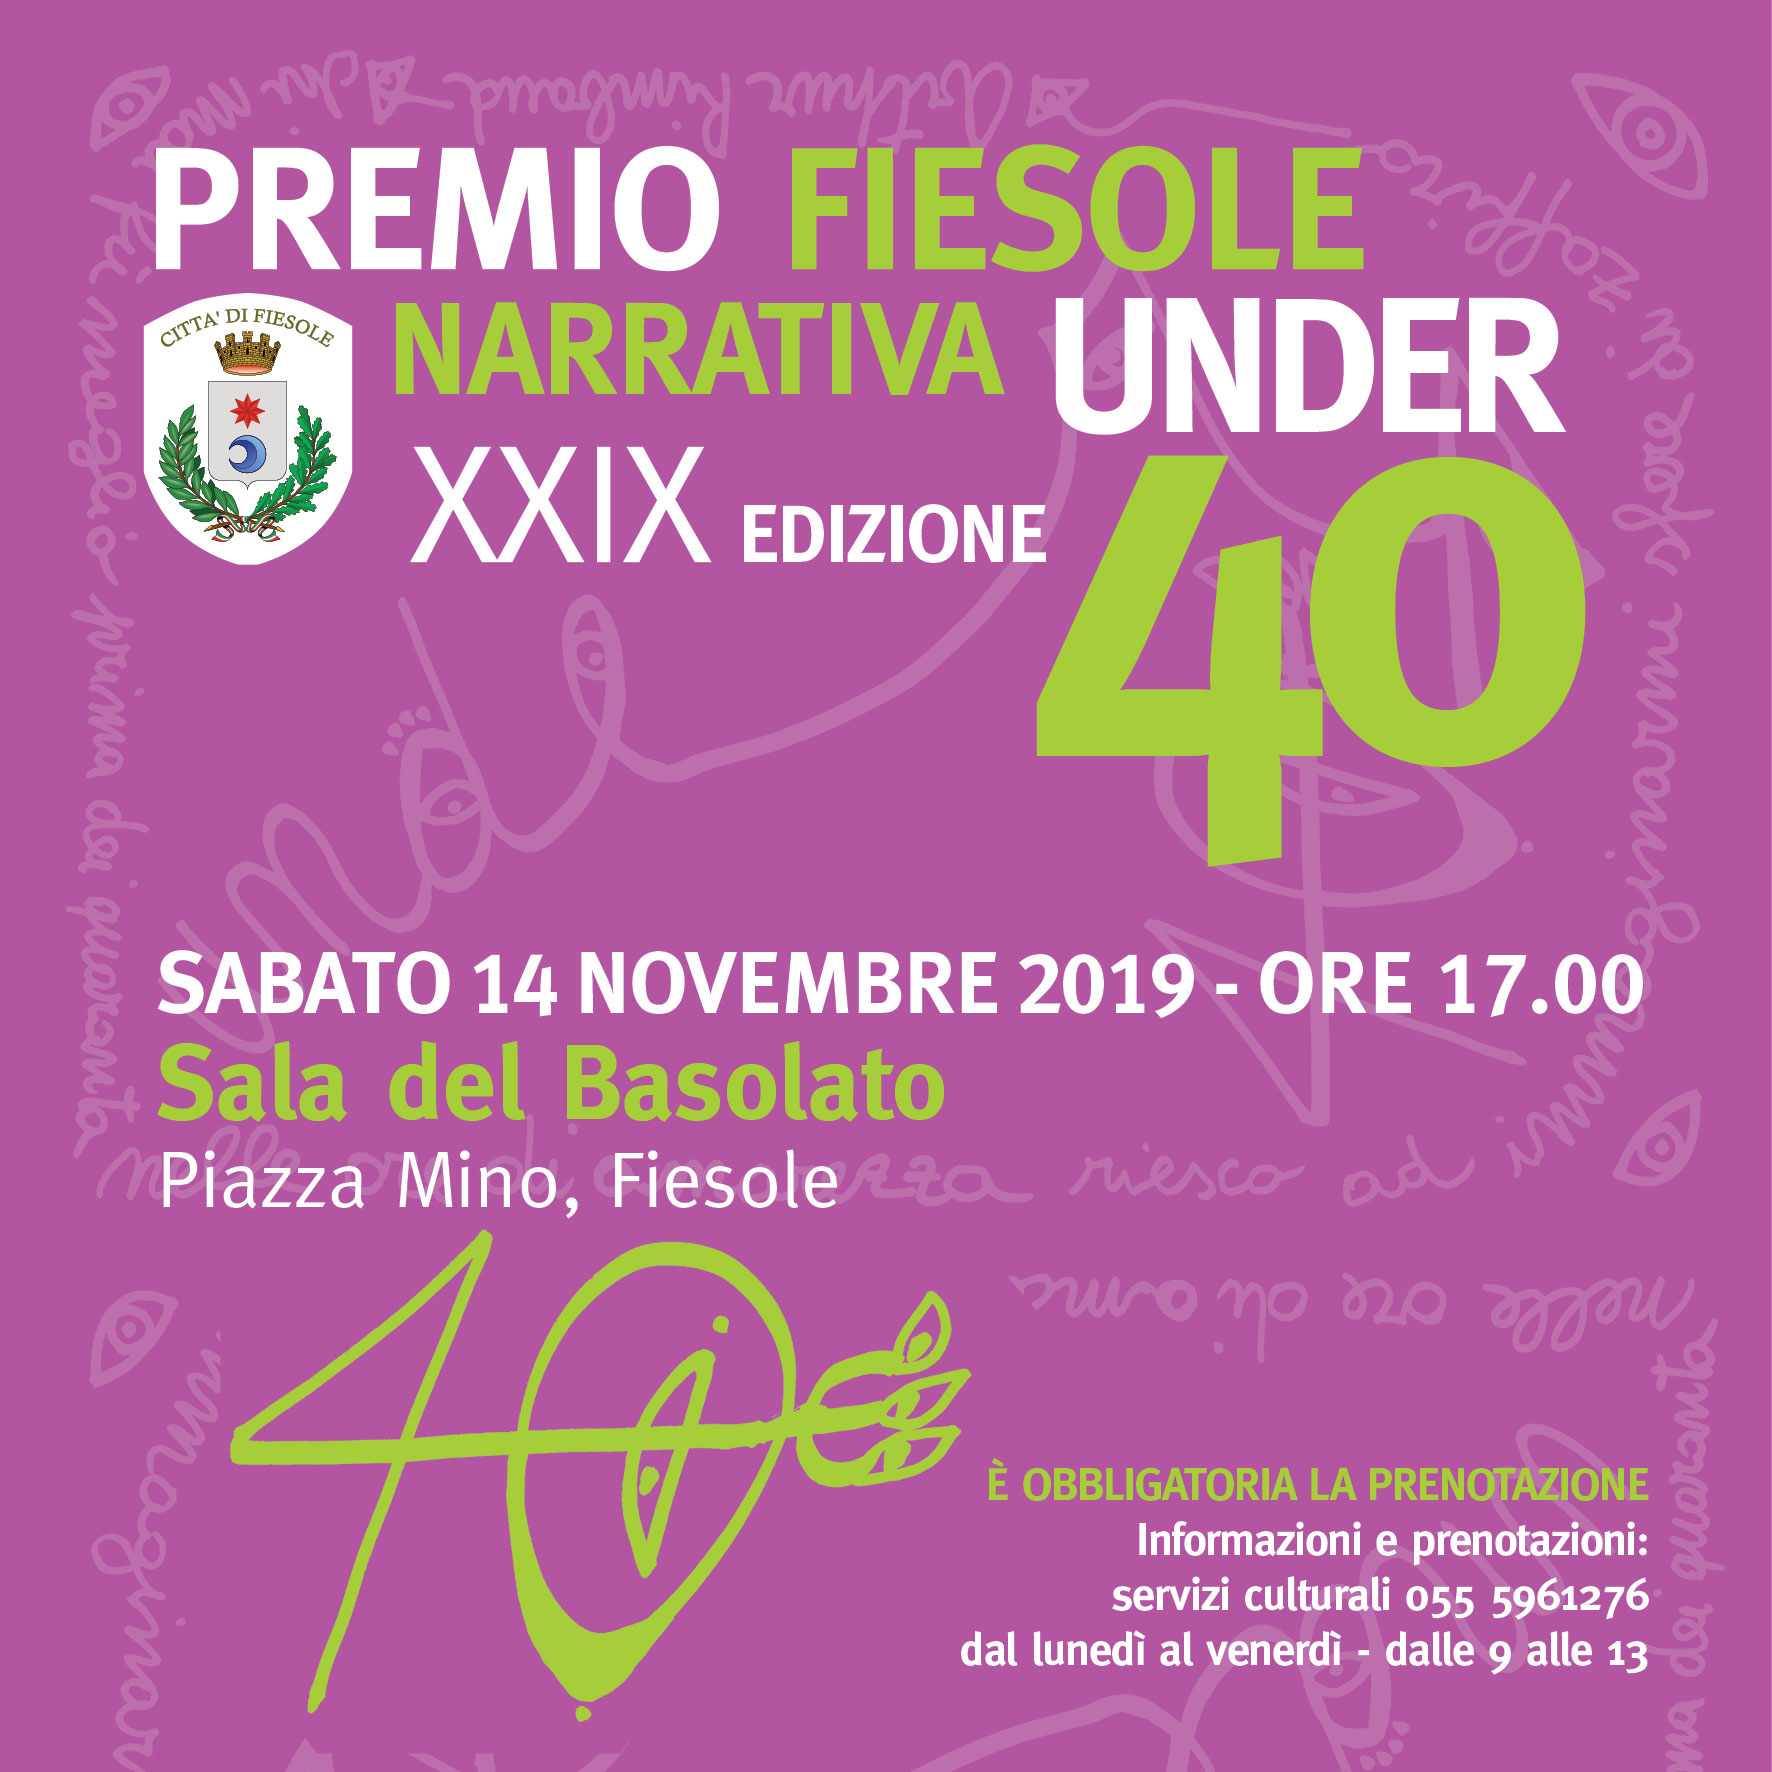 XXIX Premio Fiesole Narrativa Under 40